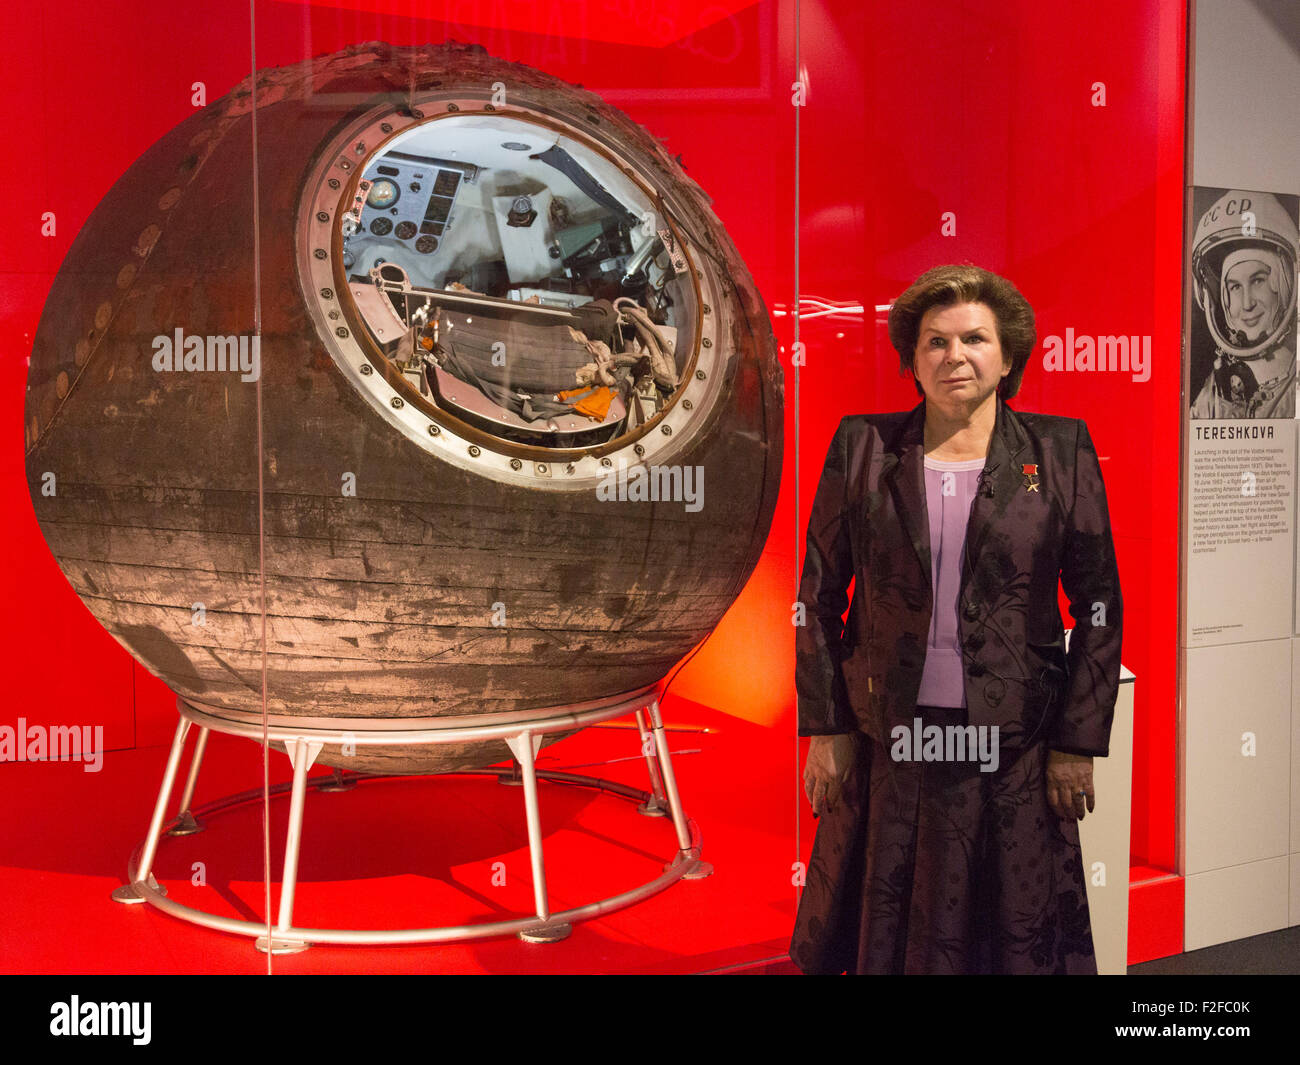 London, UK. 17.09.2015. Valentina Tereshkova eröffnet die Ausstellung und trifft sich mit Vostok-6, das eigentliche Raumschiff, das nahm sie in den Weltraum. Die Ausstellung Kosmonauten - Geburt des Raumfahrtzeitalters im Science Museum am 18. September 2015 eröffnet und läuft bis zum 13. März 2016. Stockfoto